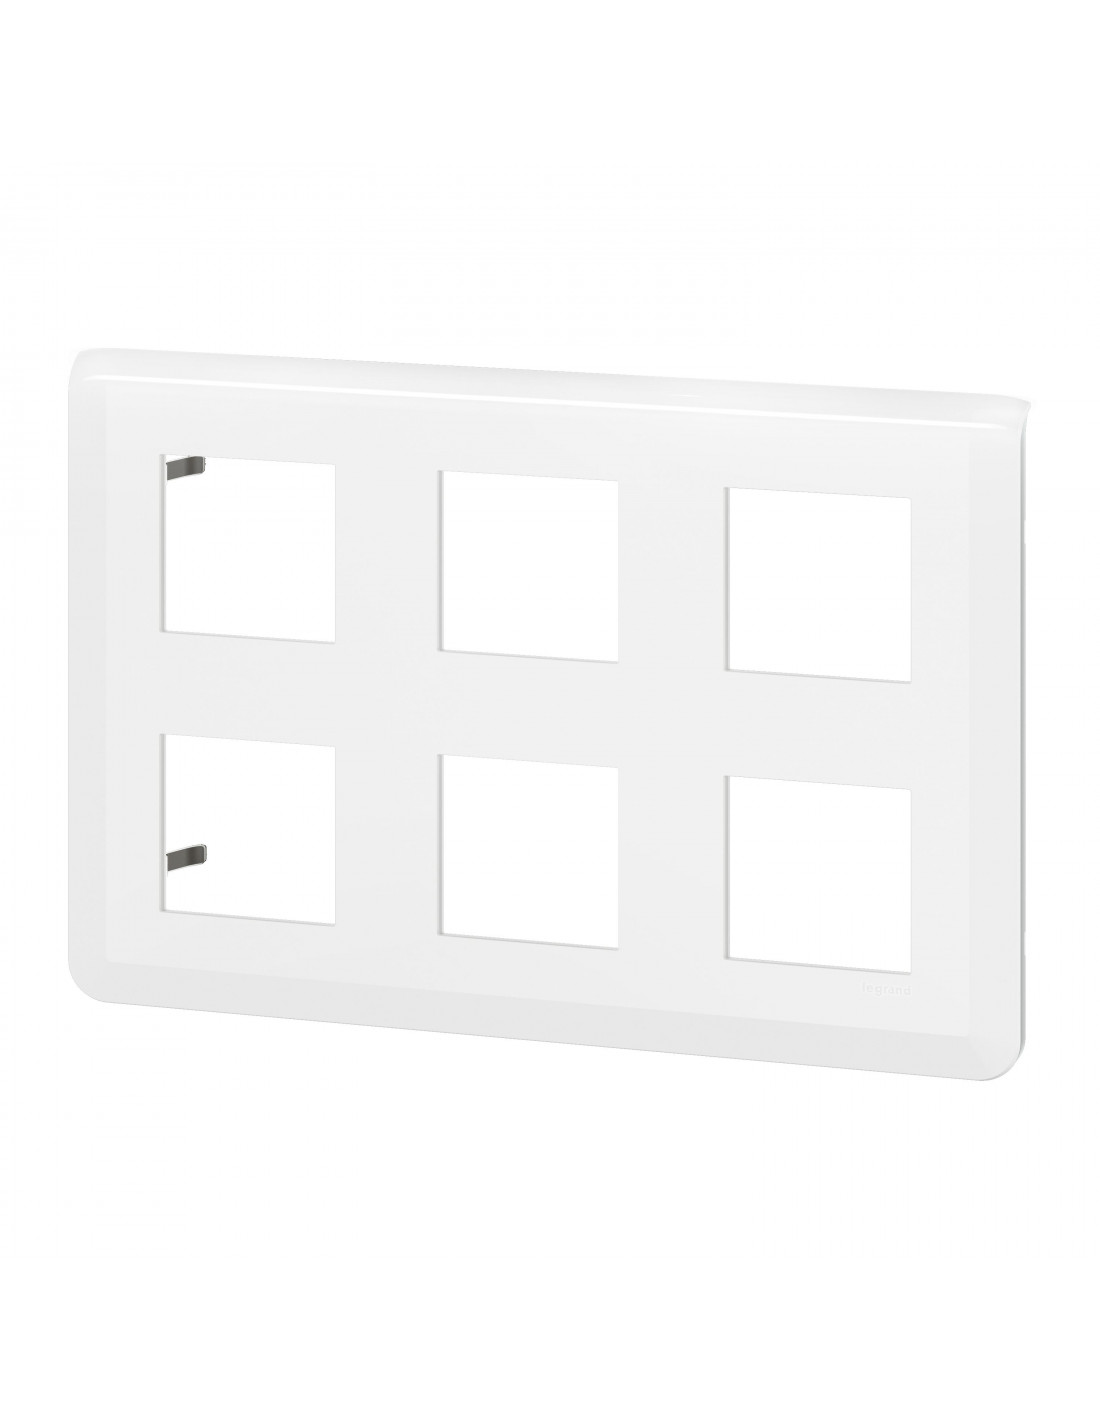 Plaque pour prise et interrupteur Legrand Mosaic - 2x2 modules - horizontal  - blanc